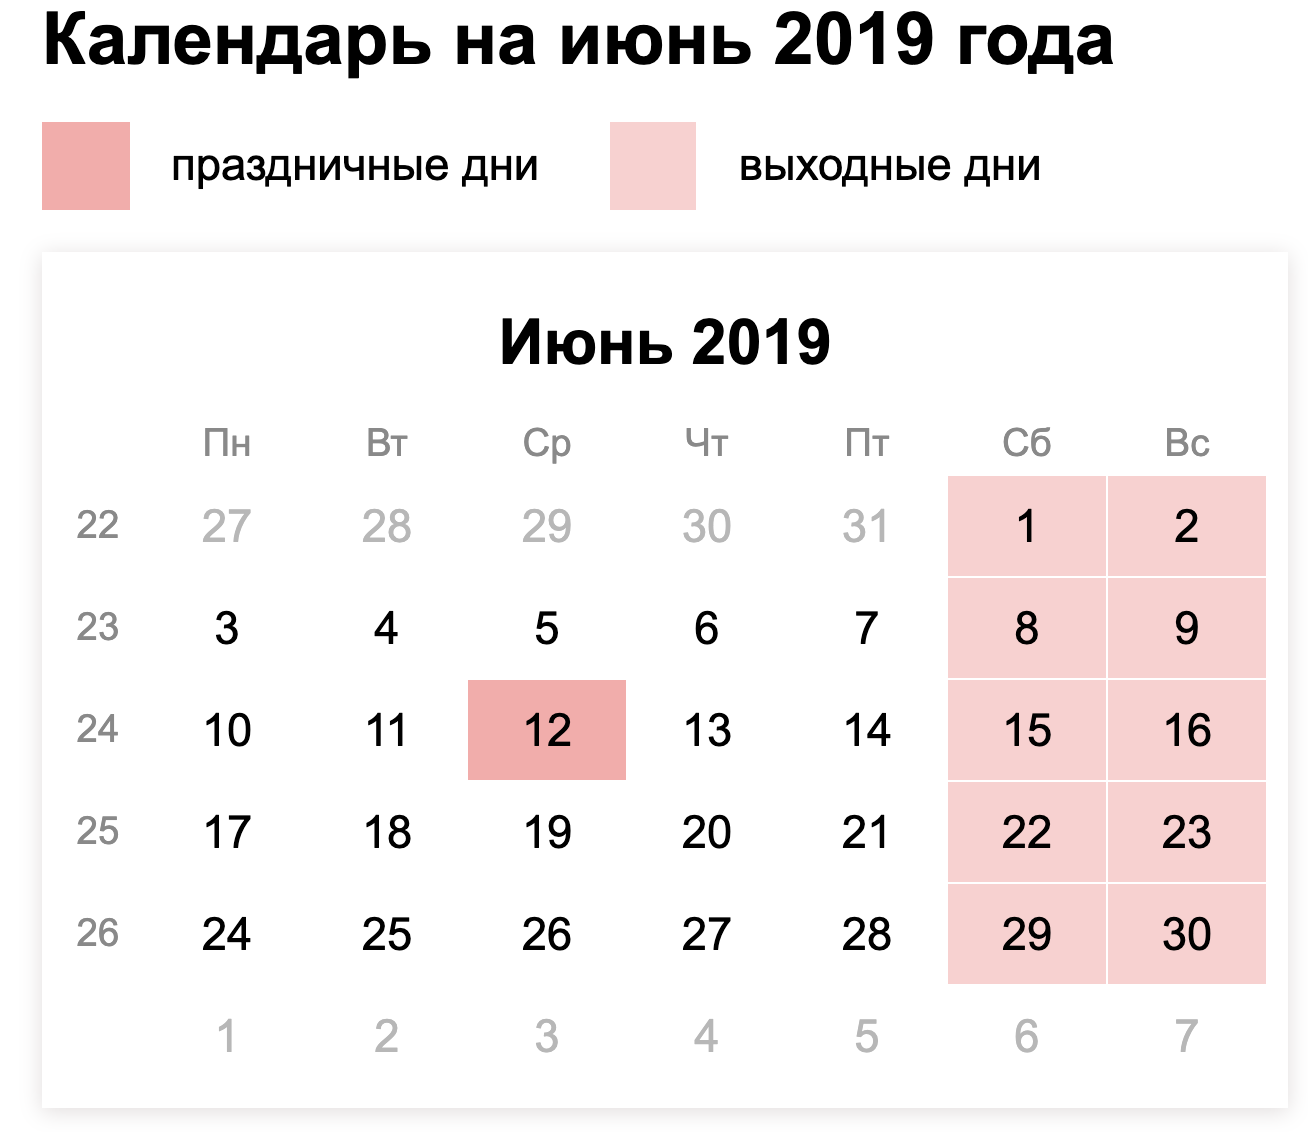 Как отдыхаем в июне 2019 года: календарь выходных